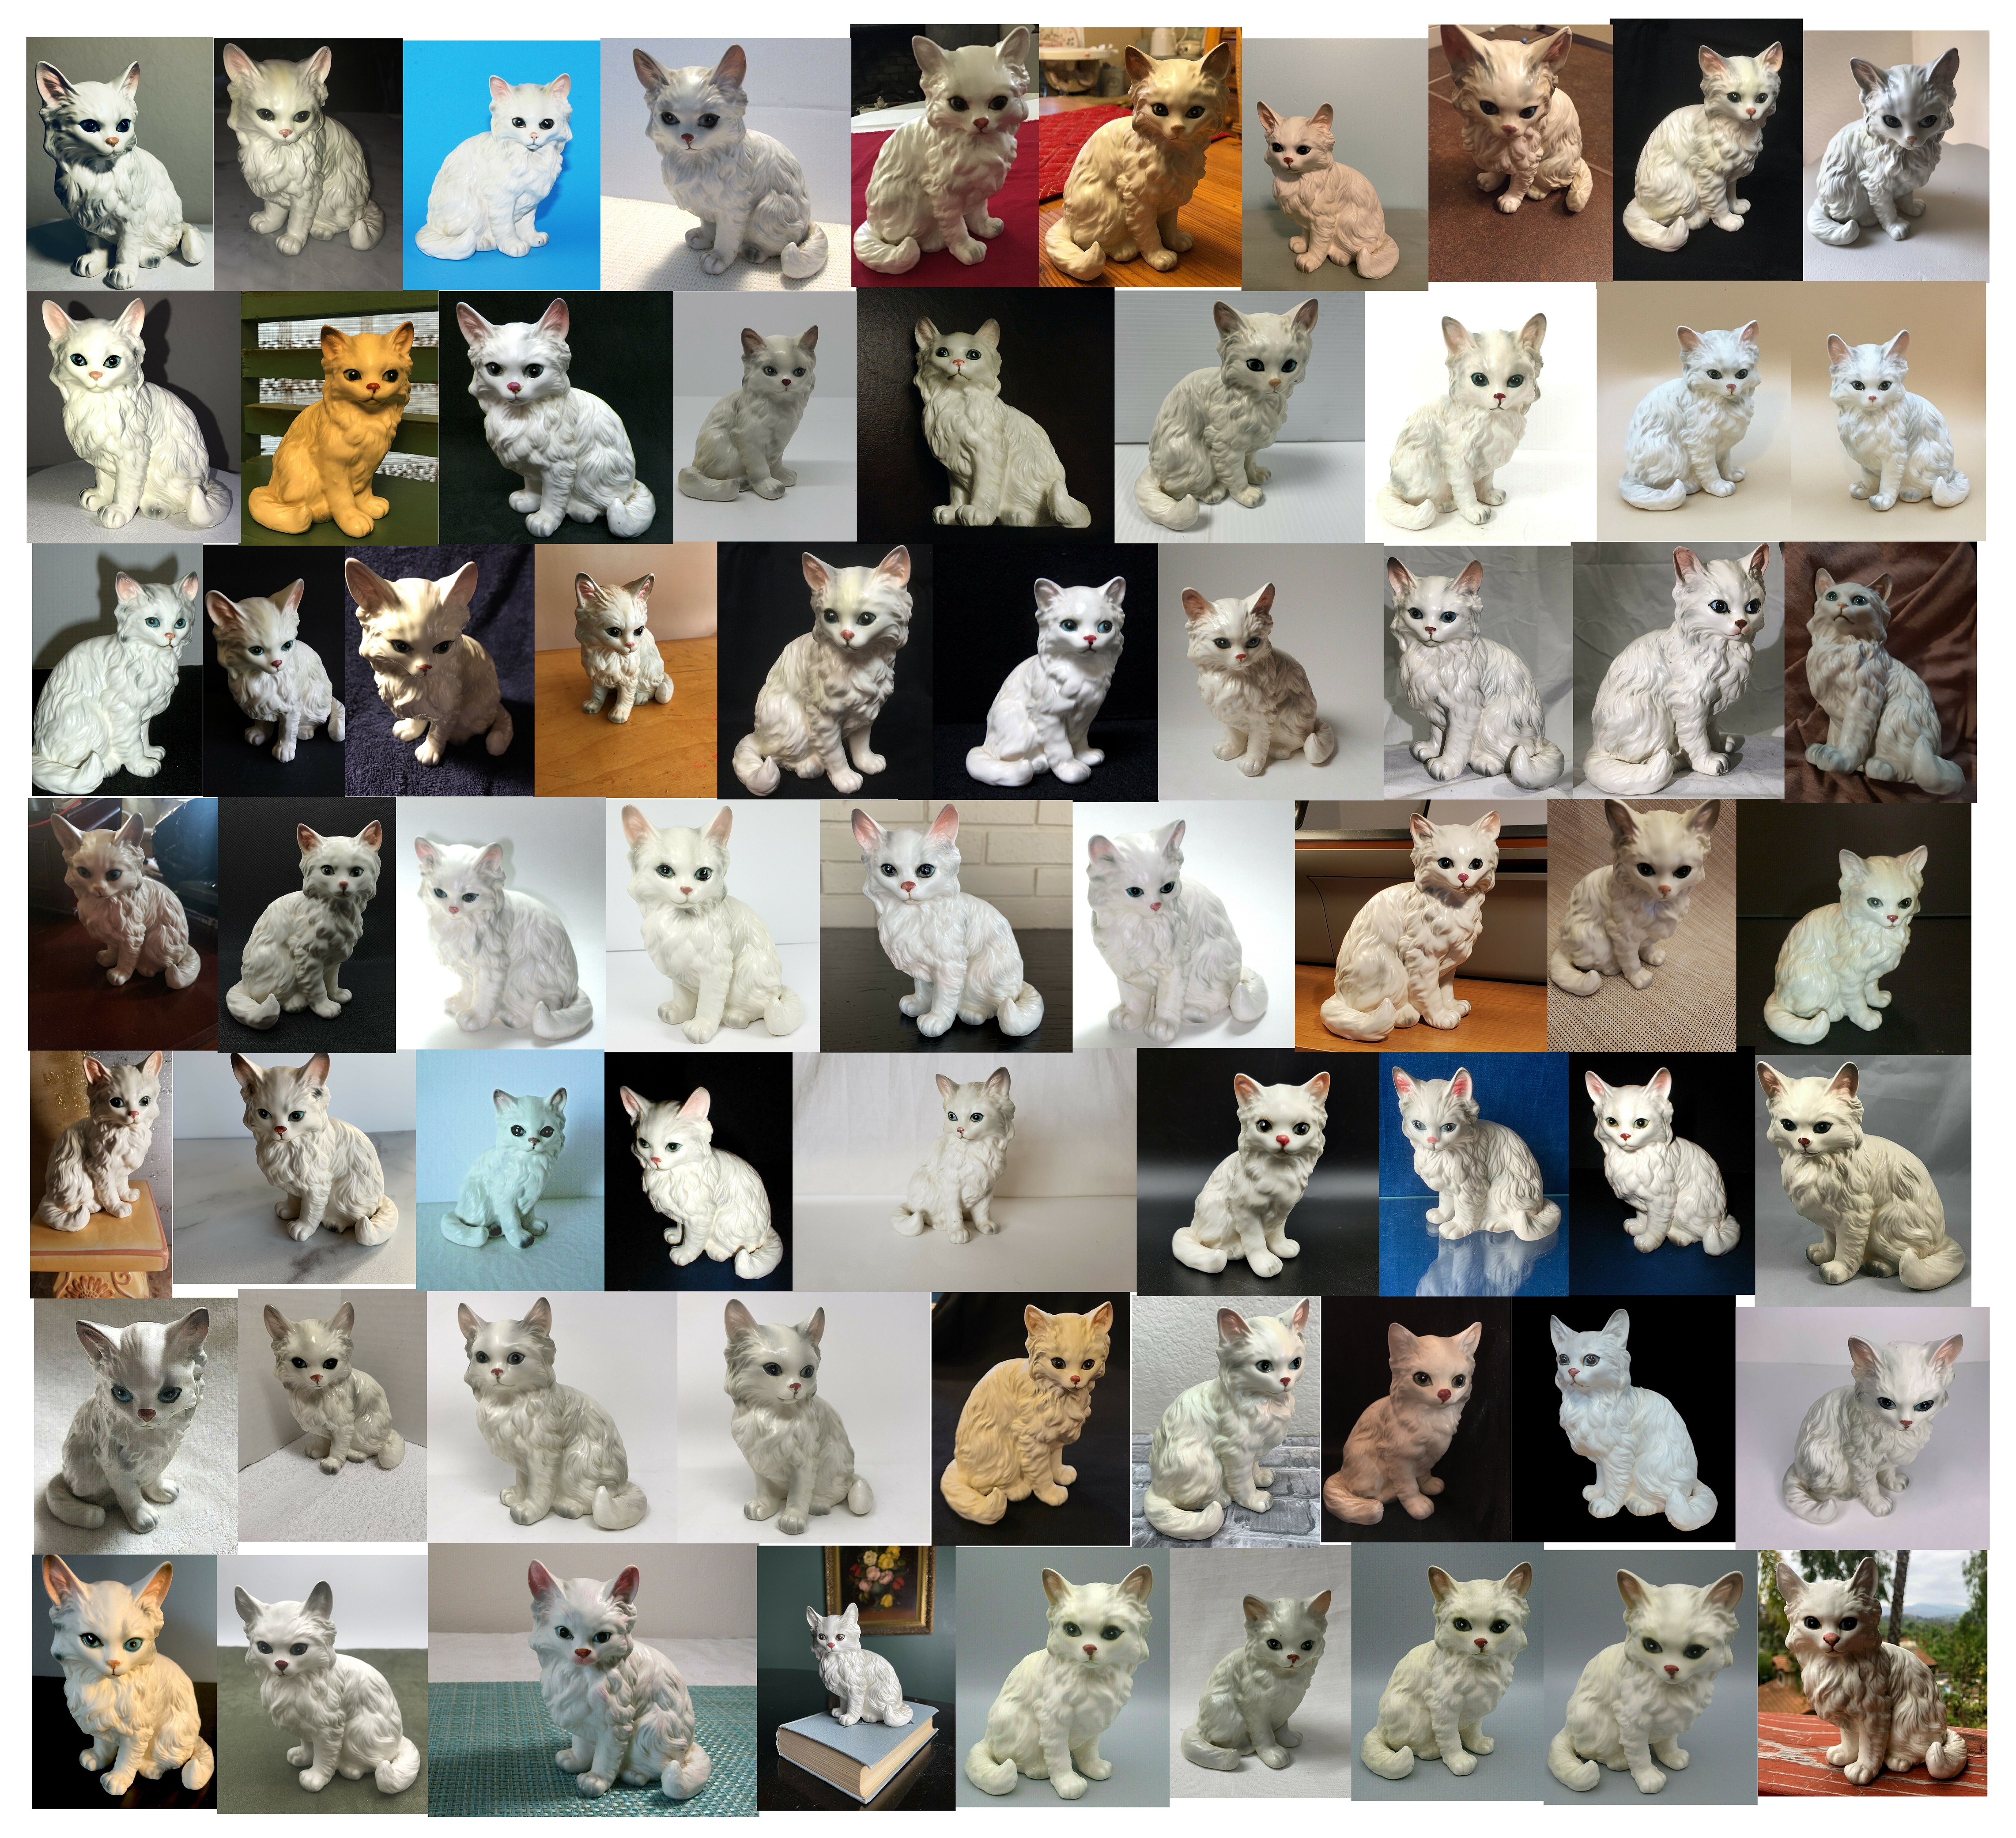 used-same-white-ceramic-cats-ebay-2014-2022.jpg